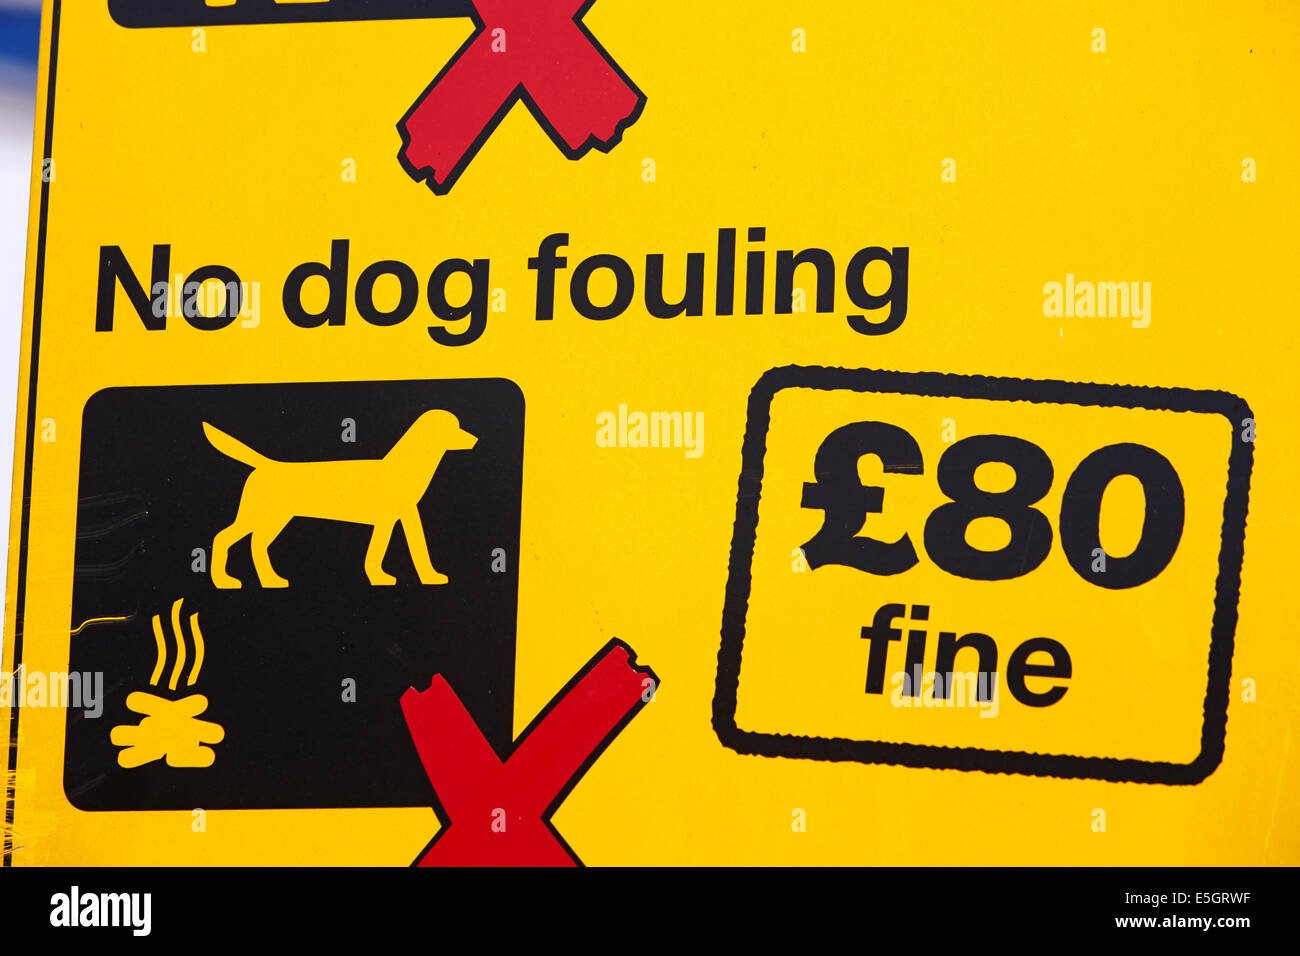 kein Hund fouling Warnschild mit Gemeinderat 80 Pfund feinen im Vereinigten Königreich Stockfoto